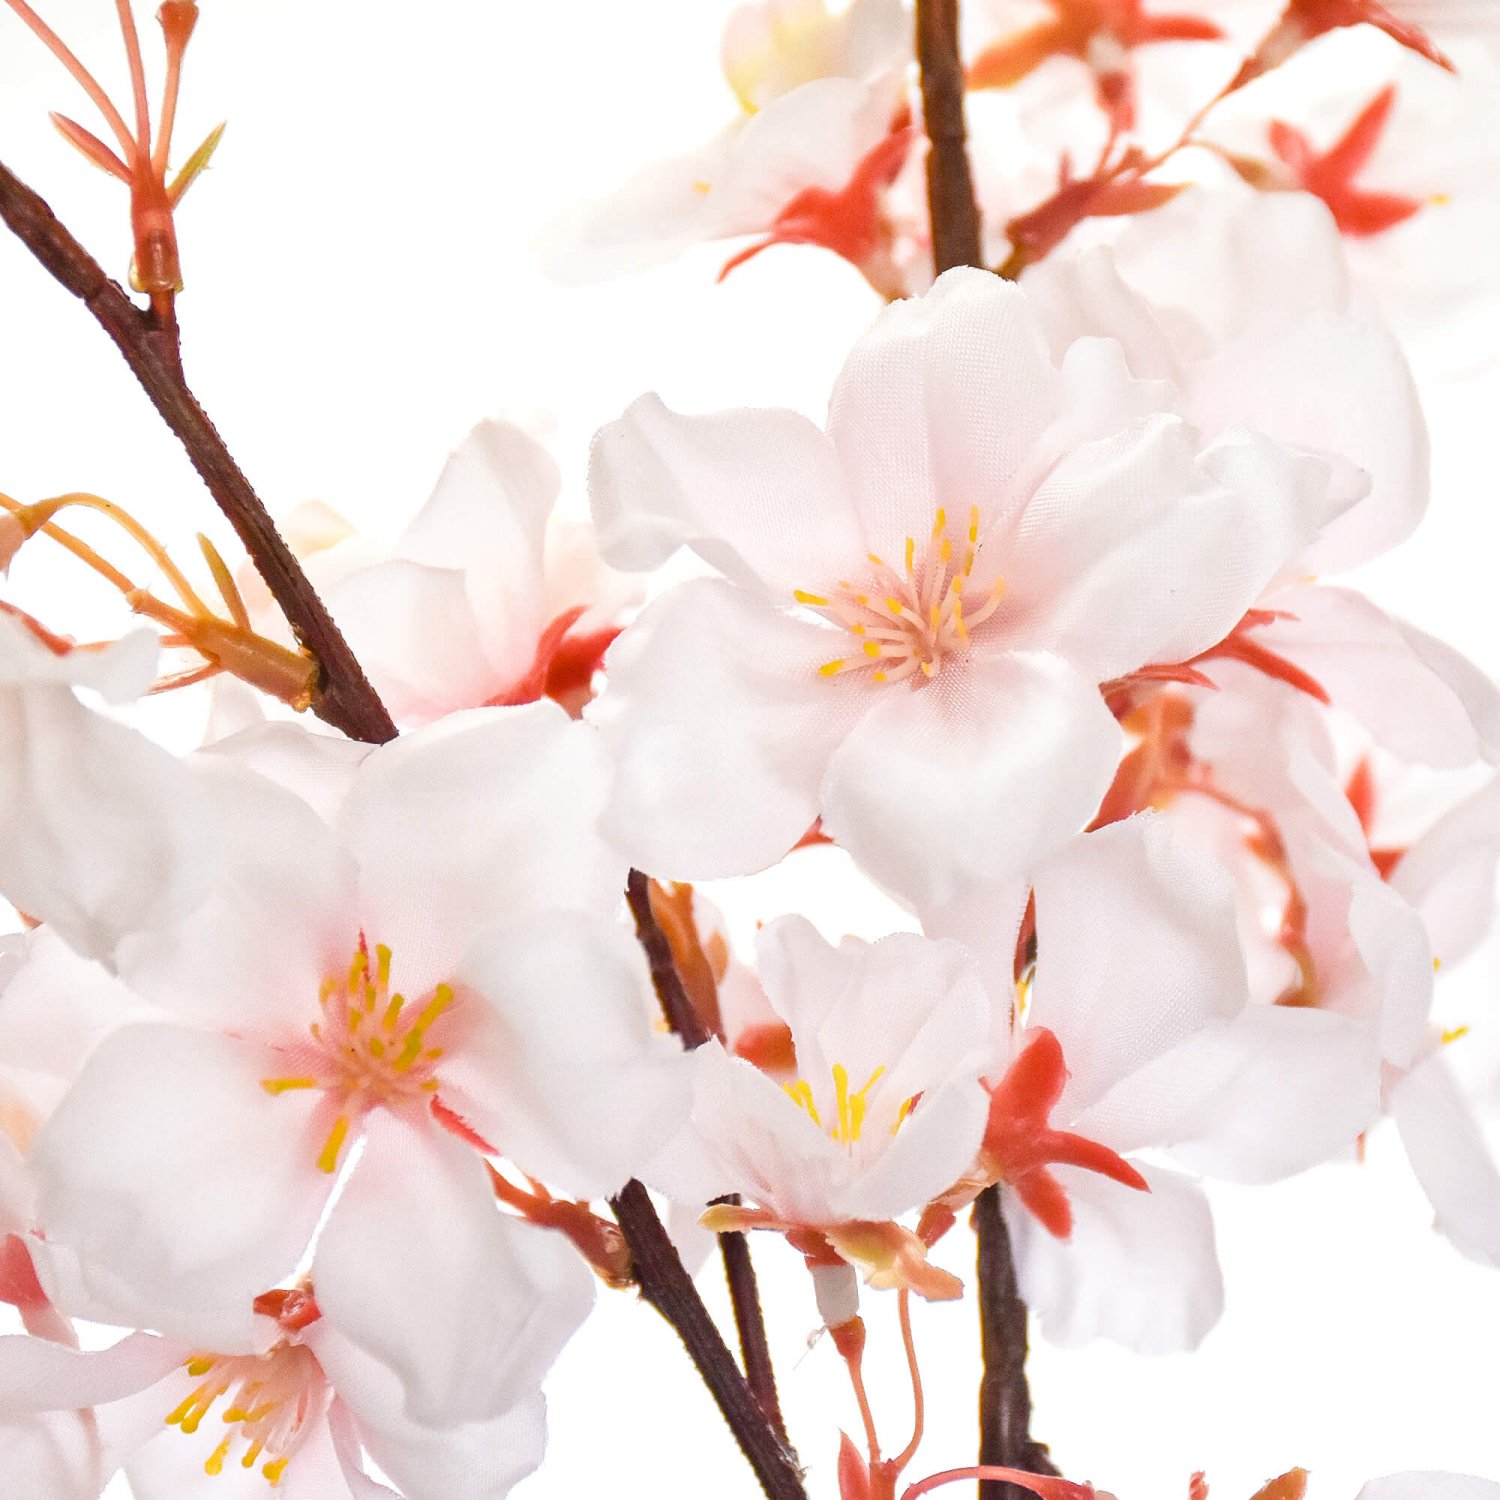 桜 五分咲き ピンク  単品花材 造花 アーティフィシャルフラワー 